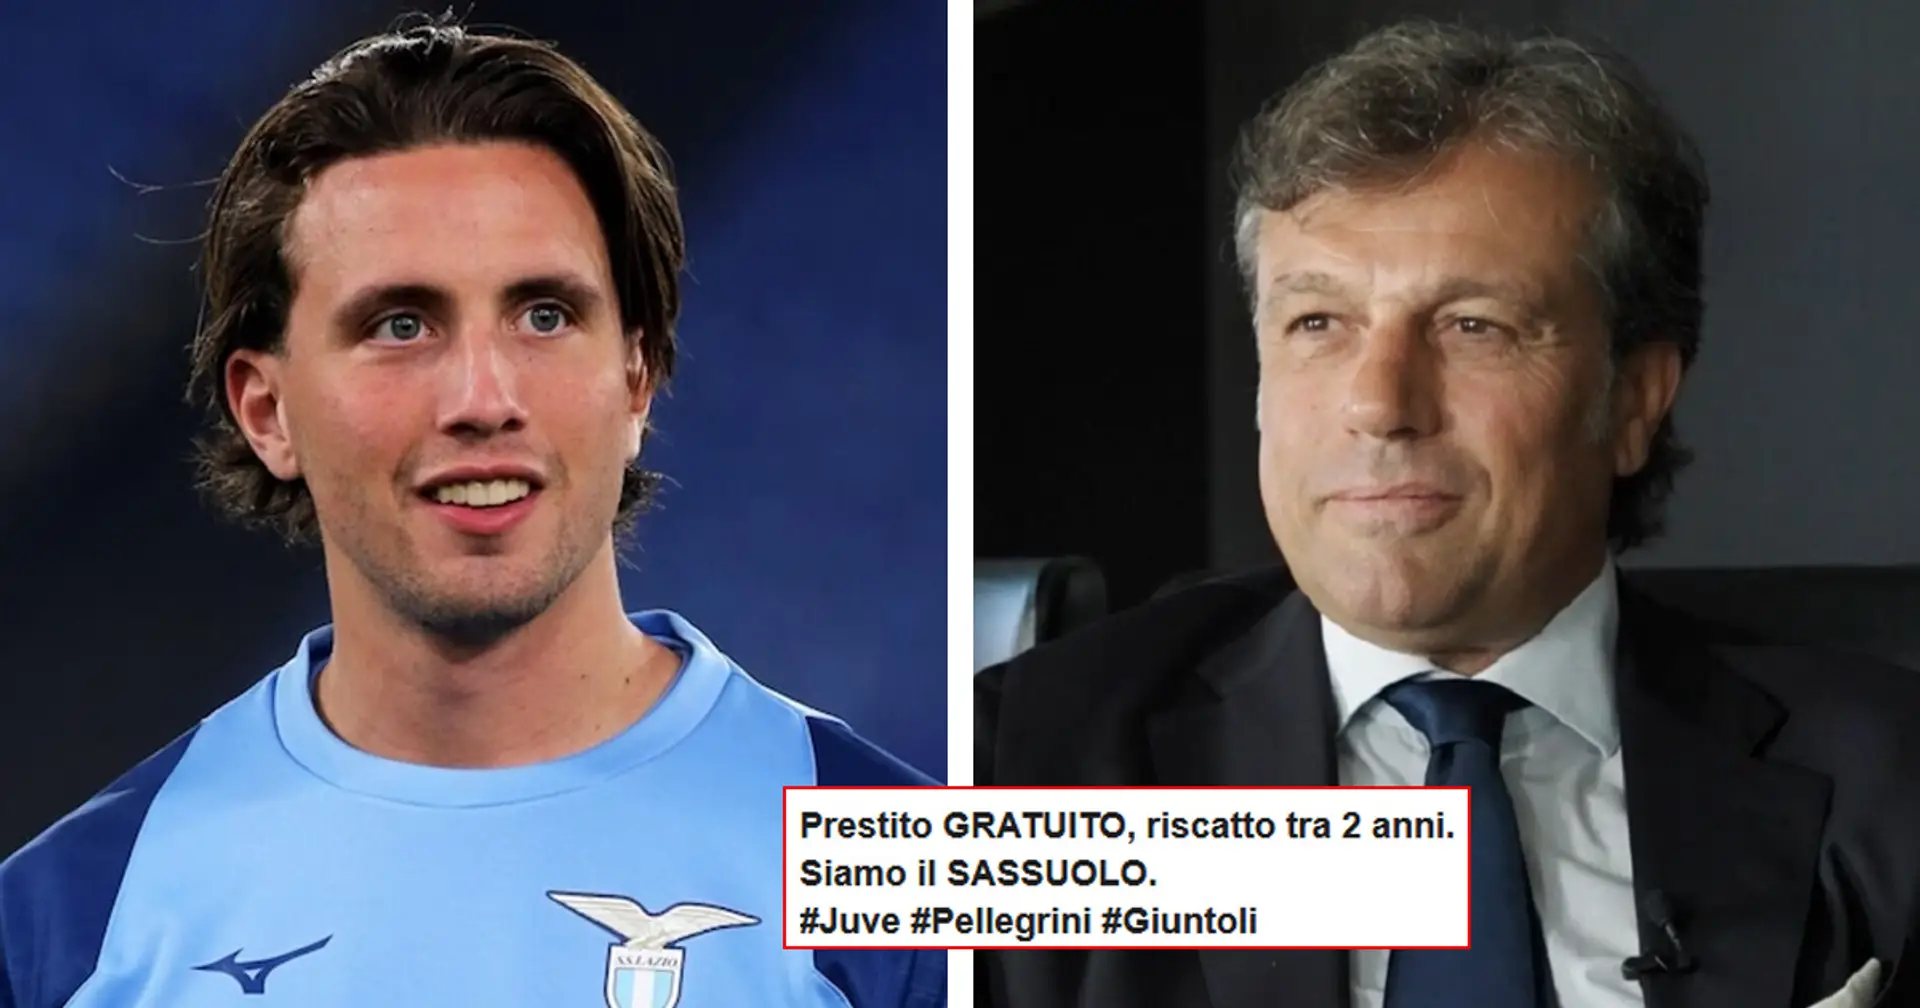 La Juventus 'regala' Pellegrini alla Lazio, tifosi infuriati per la formula ufficiale del trasferimento: "Siamo il Sassuolo!"